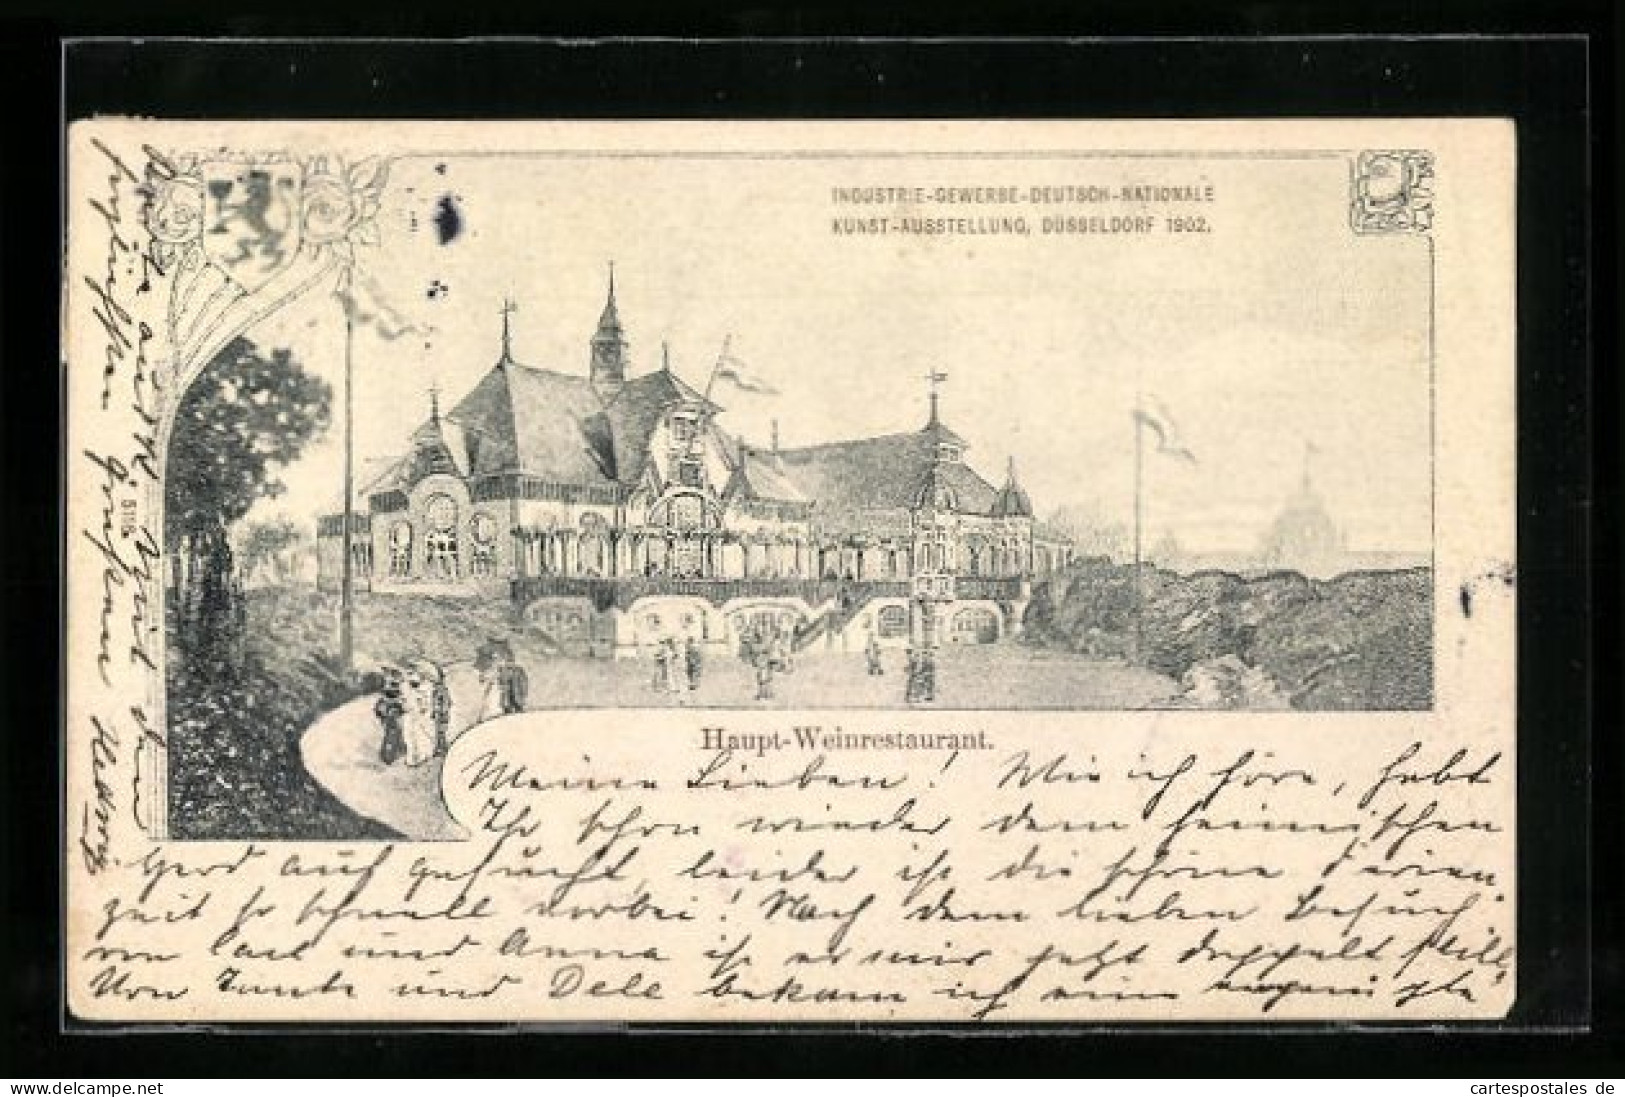 AK Düsseldorf, Industrie-, Gewerbe-, Deutsch- Nationale Kunstausstellung 1902, Haupt-Weinrestaurant  - Ausstellungen